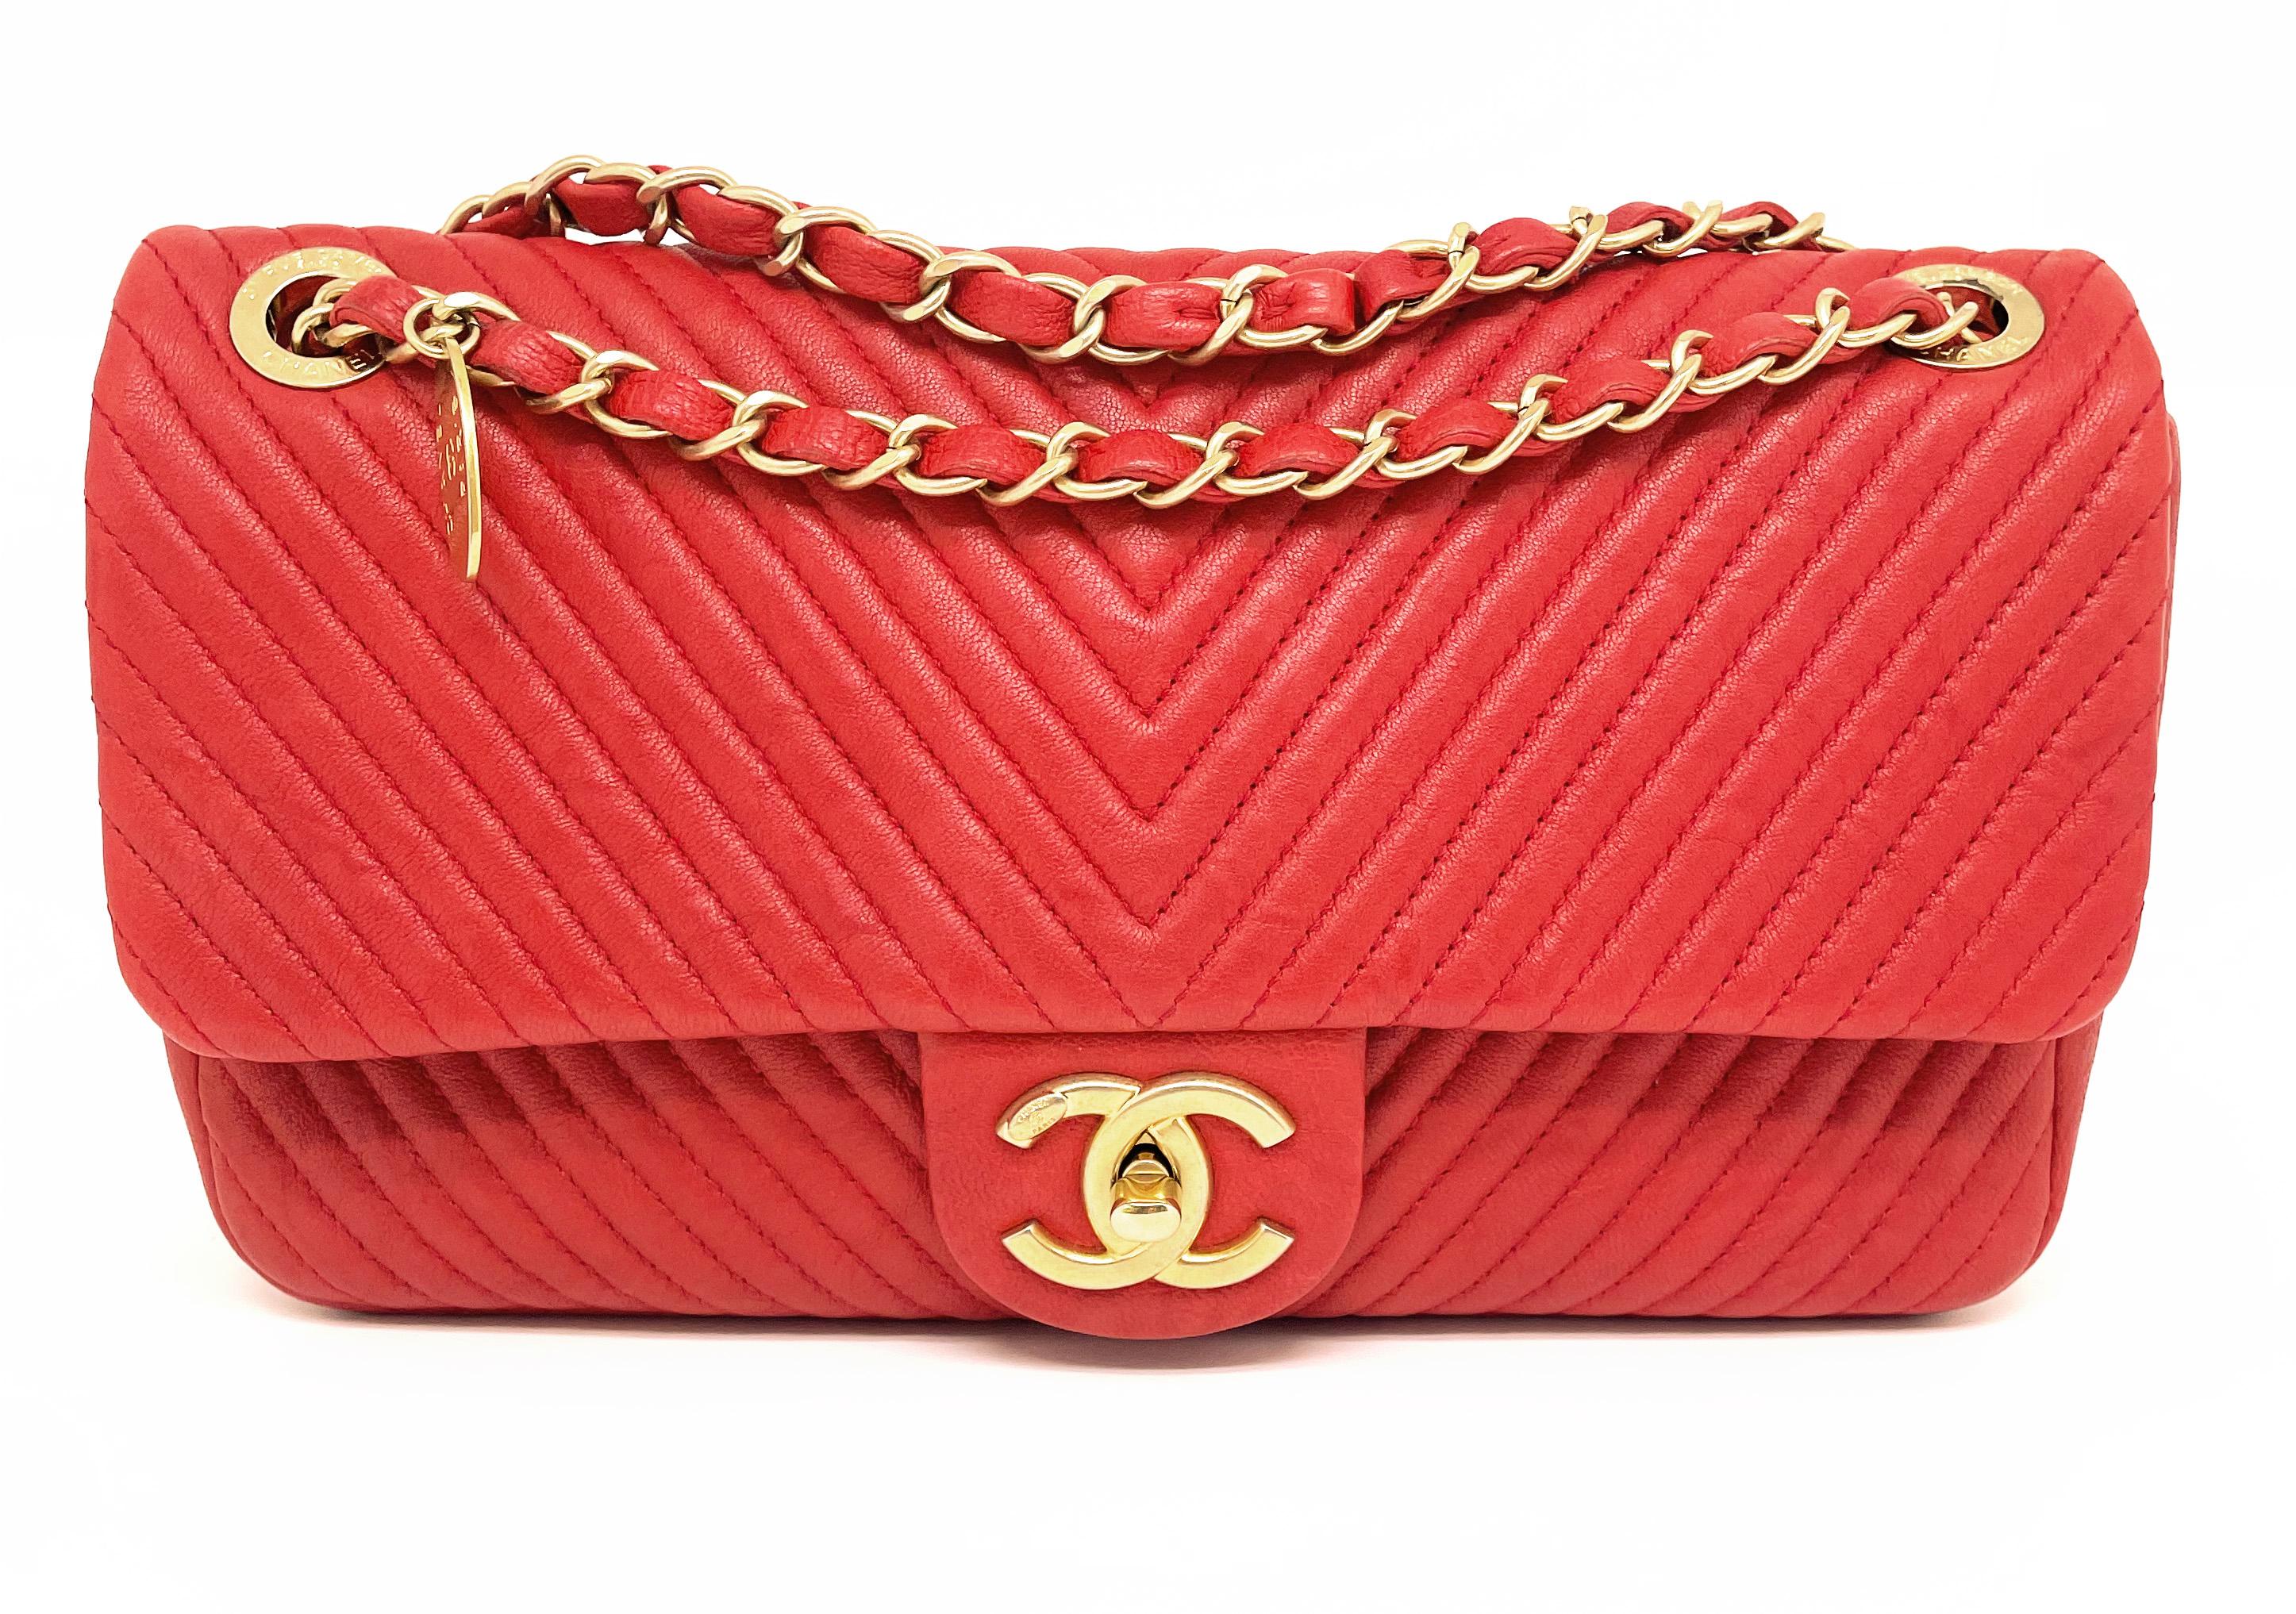 Superb Chanel 27 cm Tasche in Leder und Valentine Red Chevron Muster.
Praktisch mit der einfachen Innenklappe aus schwarzem Stoff.
Eine Reißverschlusstasche für noch mehr Sicherheit.
Diese Tasche hat eine goldene Kette, die mit Leder verwoben